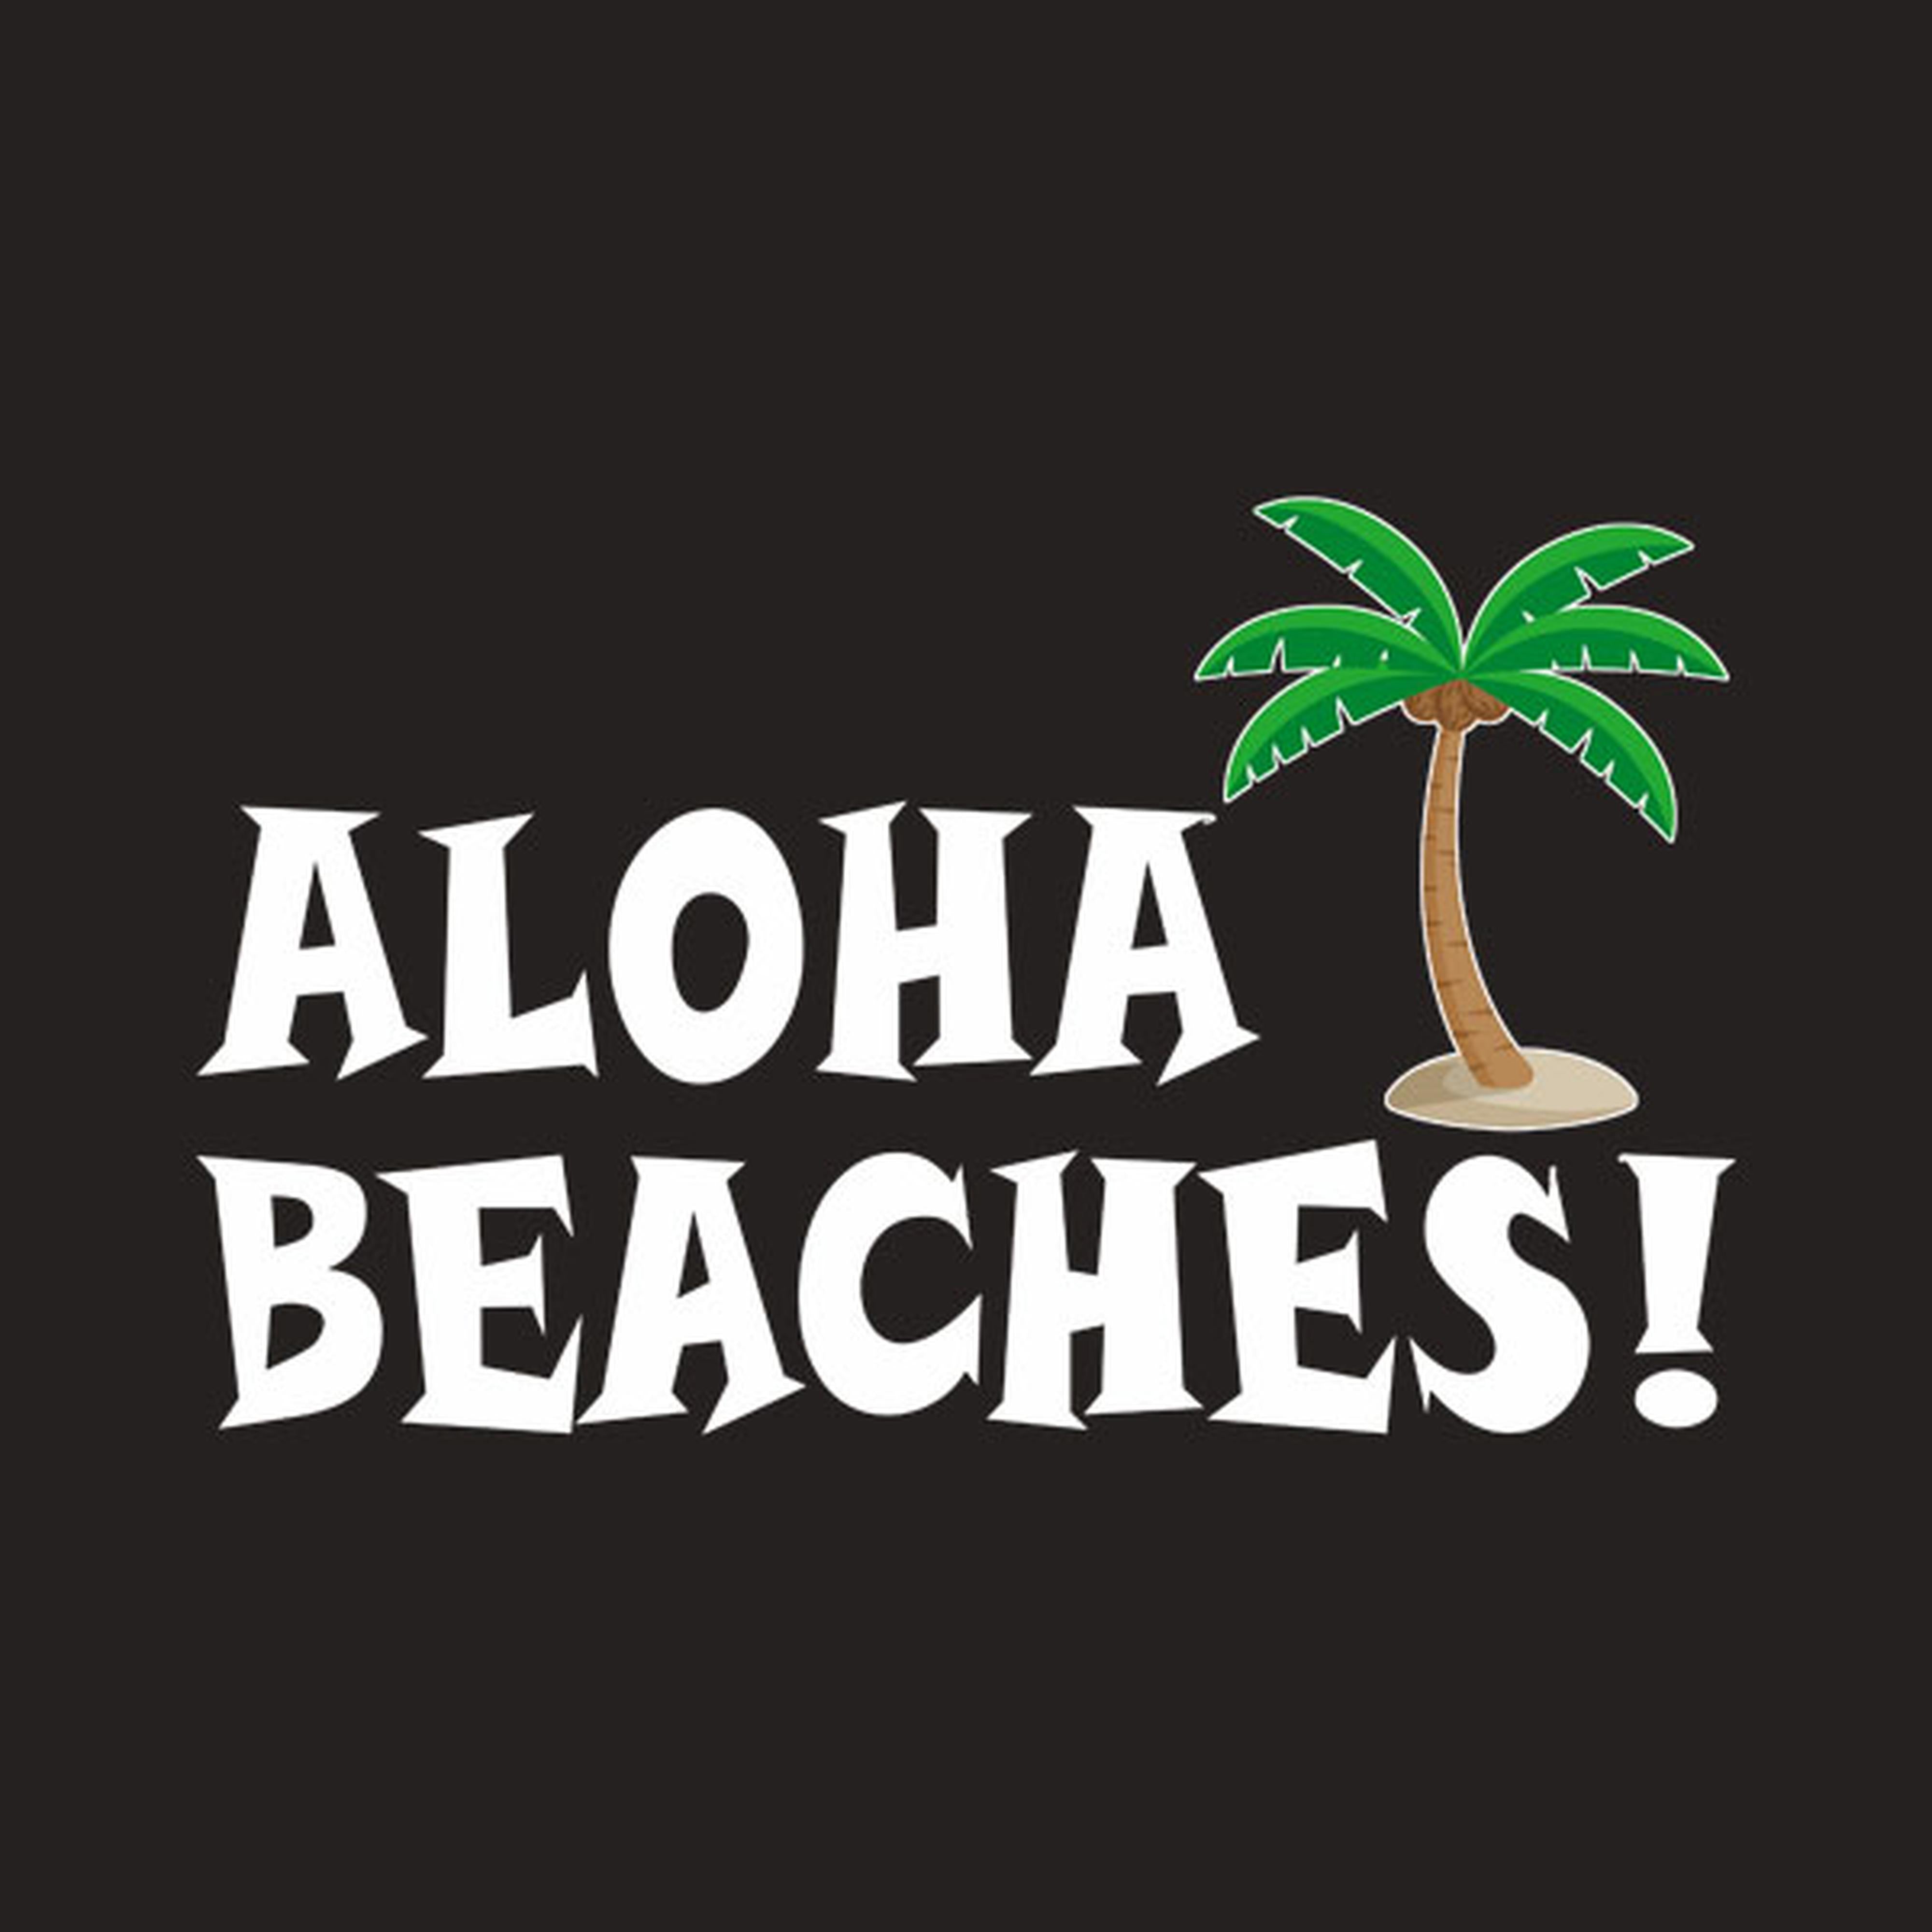 Aloha beaches - T-shirt